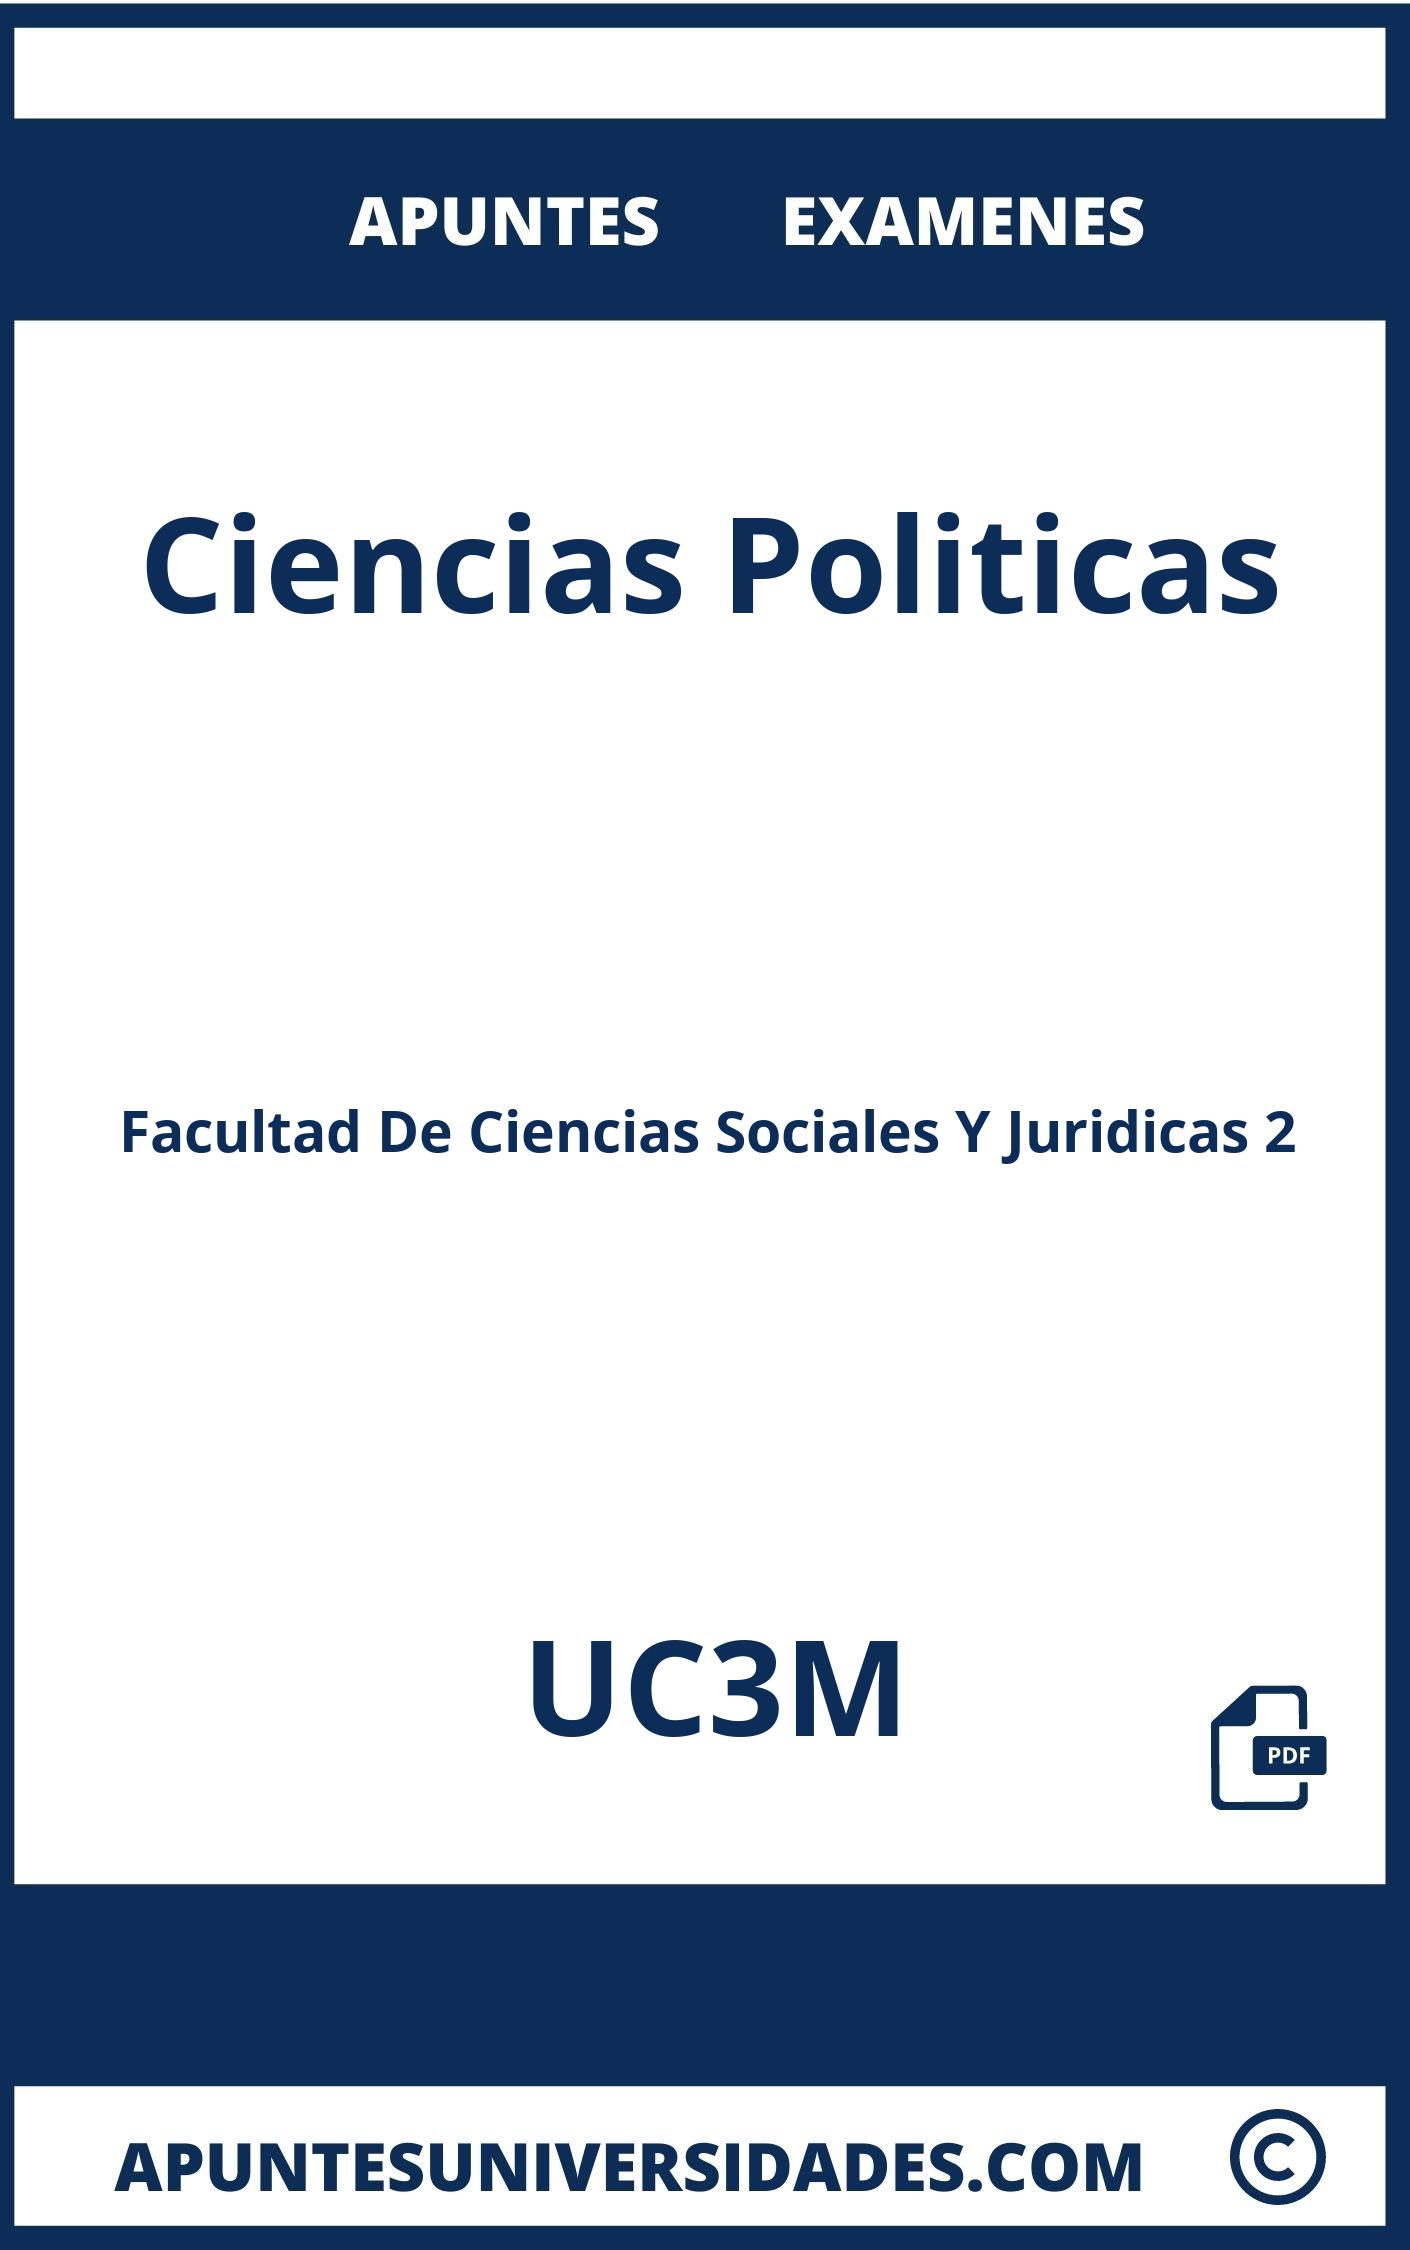 Apuntes Ciencias Politicas UC3M y Examenes